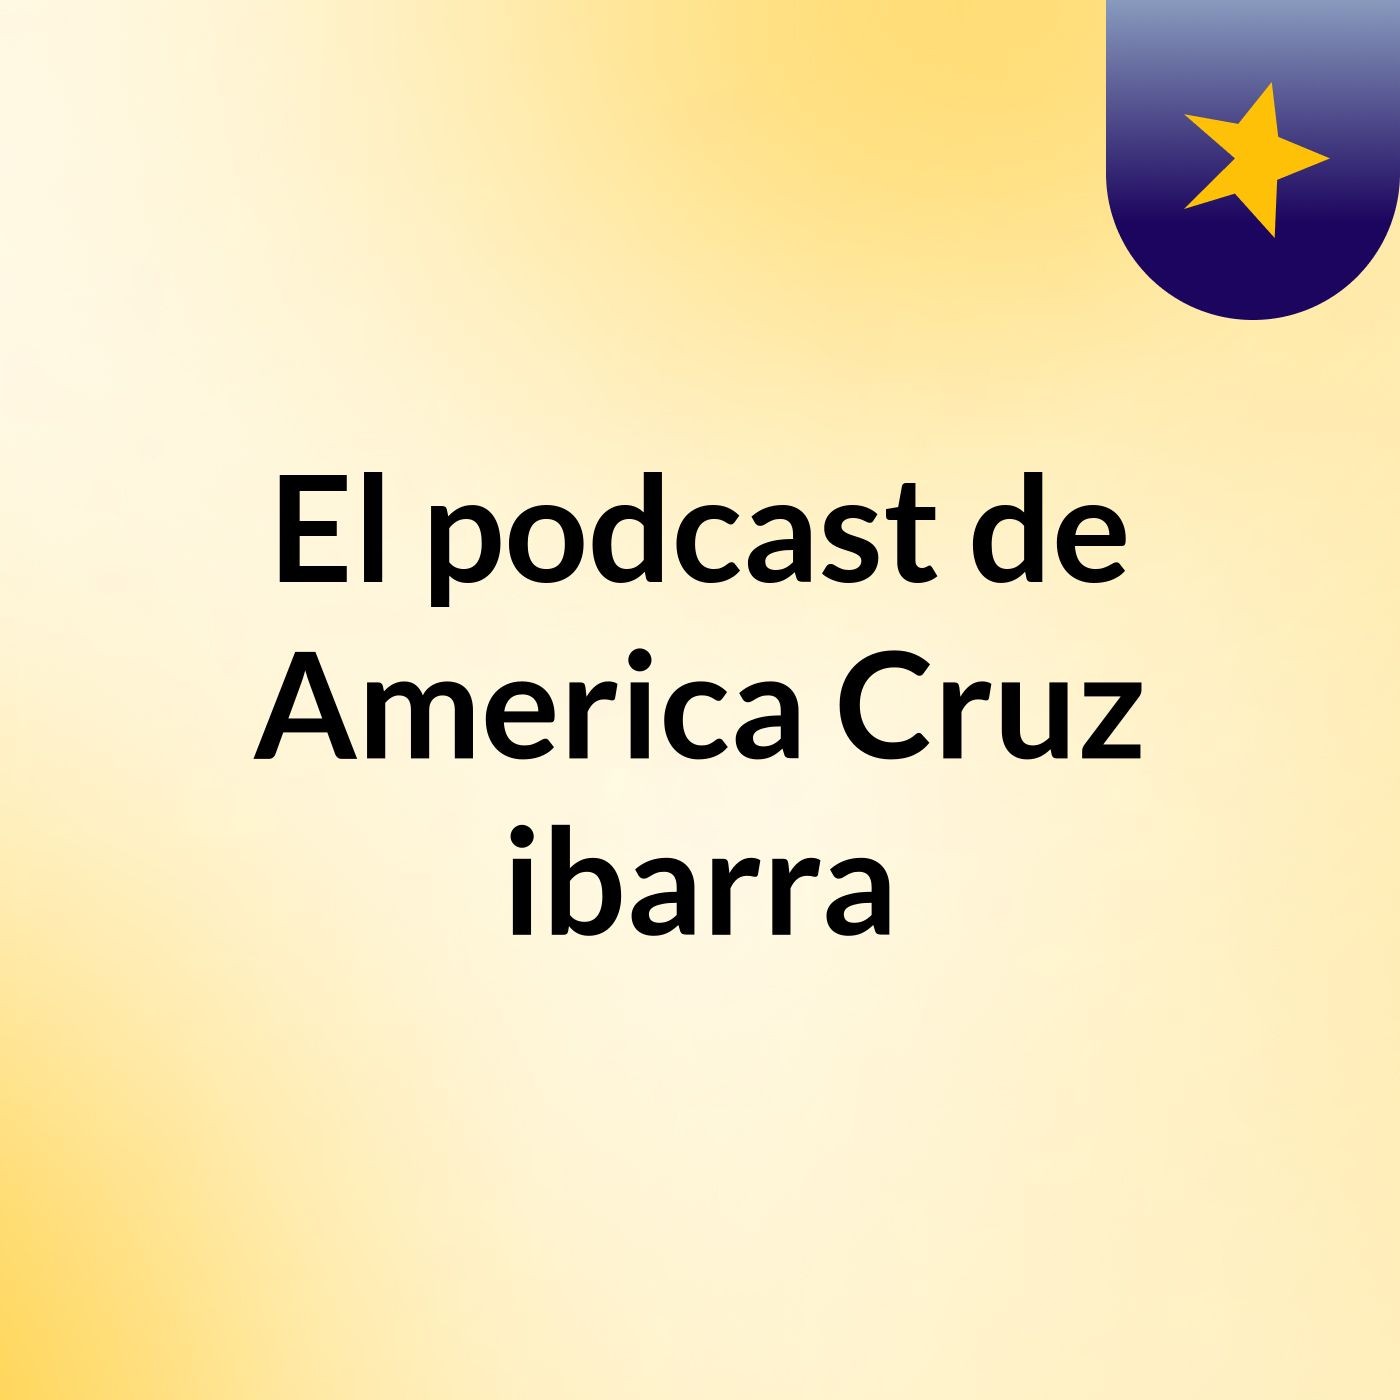 El podcast de America Cruz ibarra